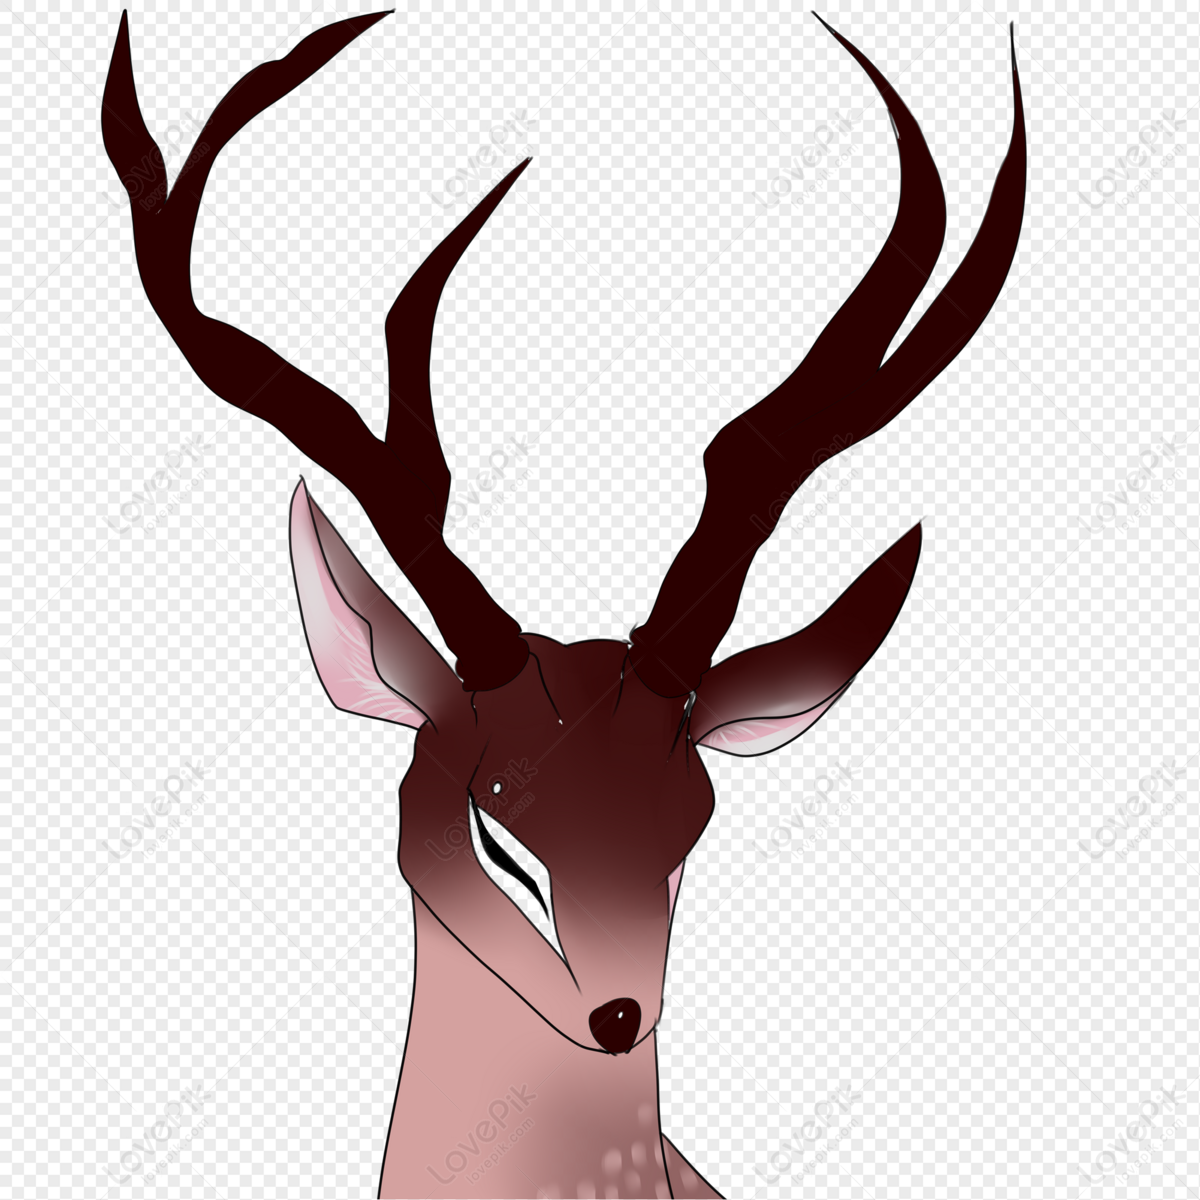 Download Deer Head Transparent Background HQ PNG Image | FreePNGImg